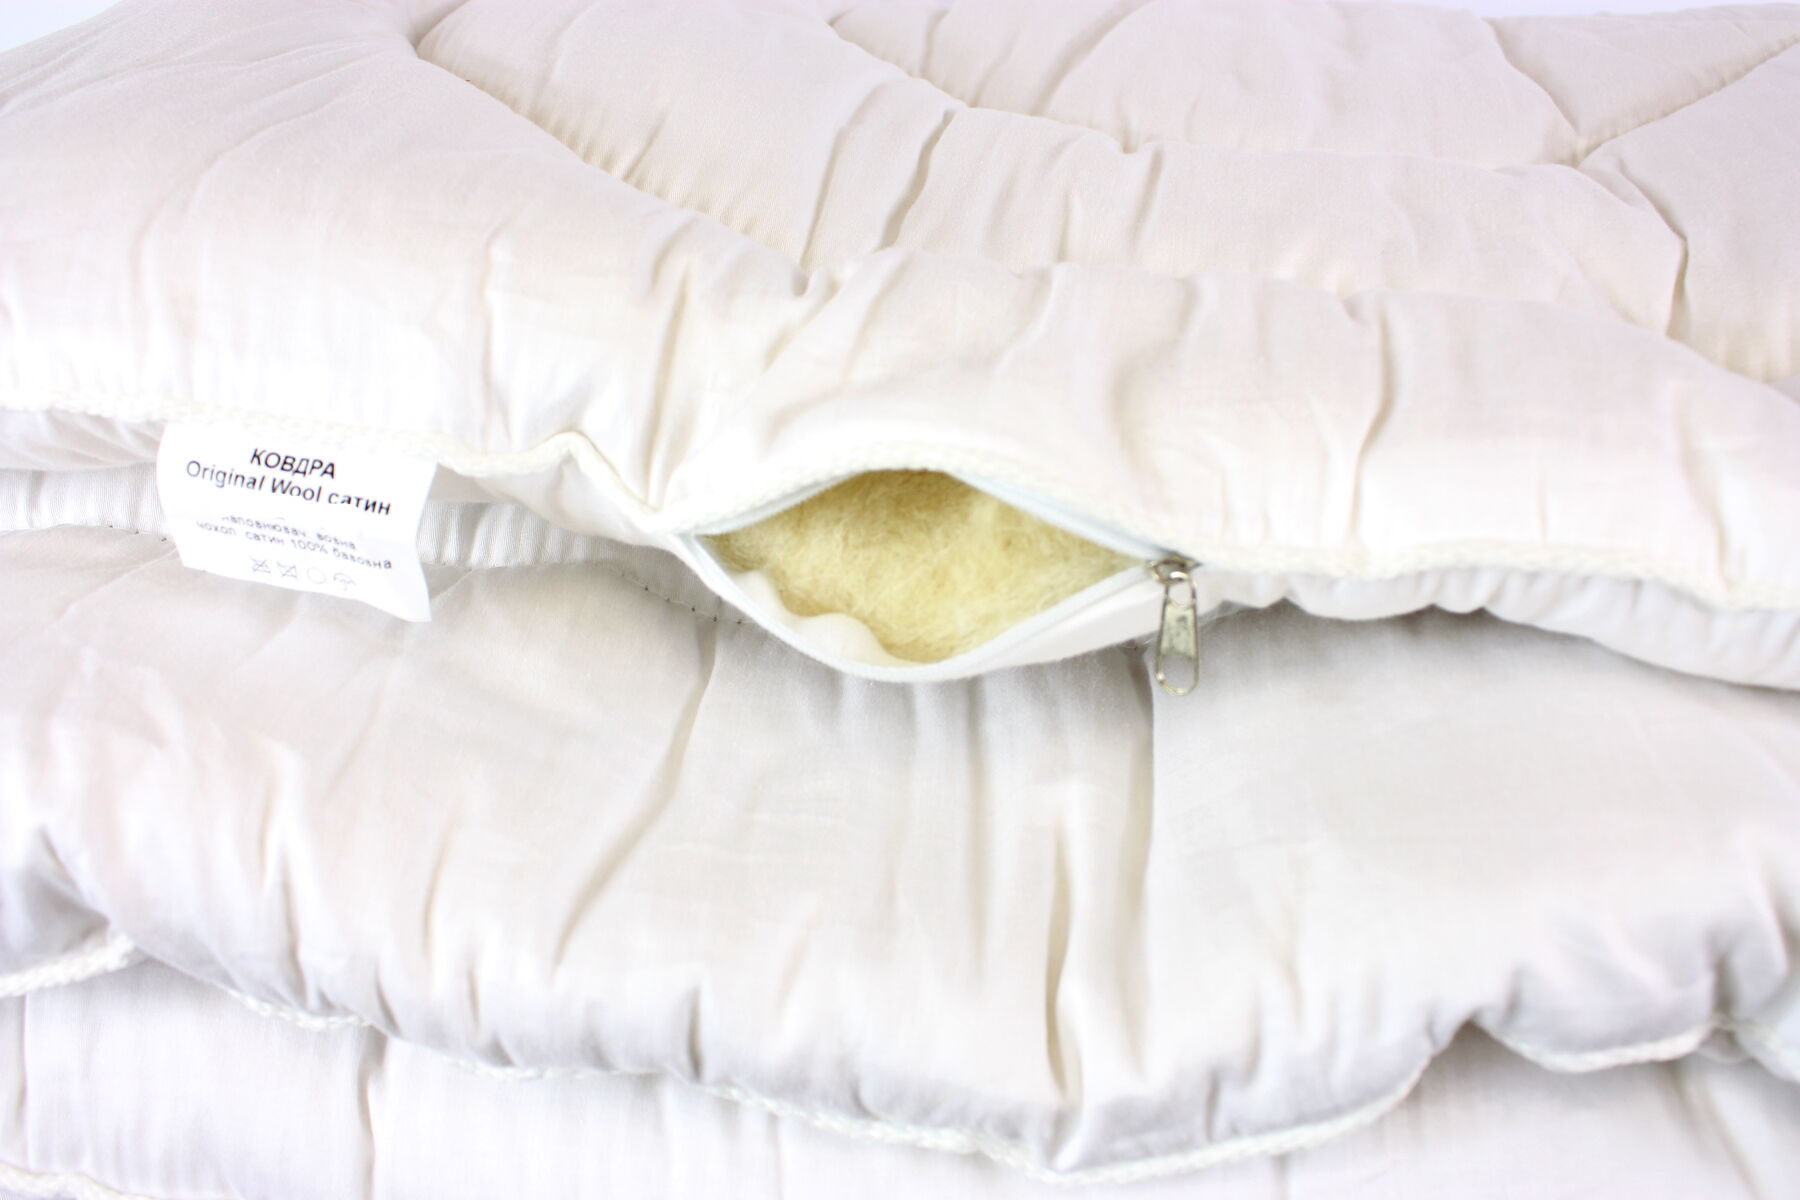 Одеяло шерстяное полуторное LightHouse Original Wool сатин 155*215 - купить